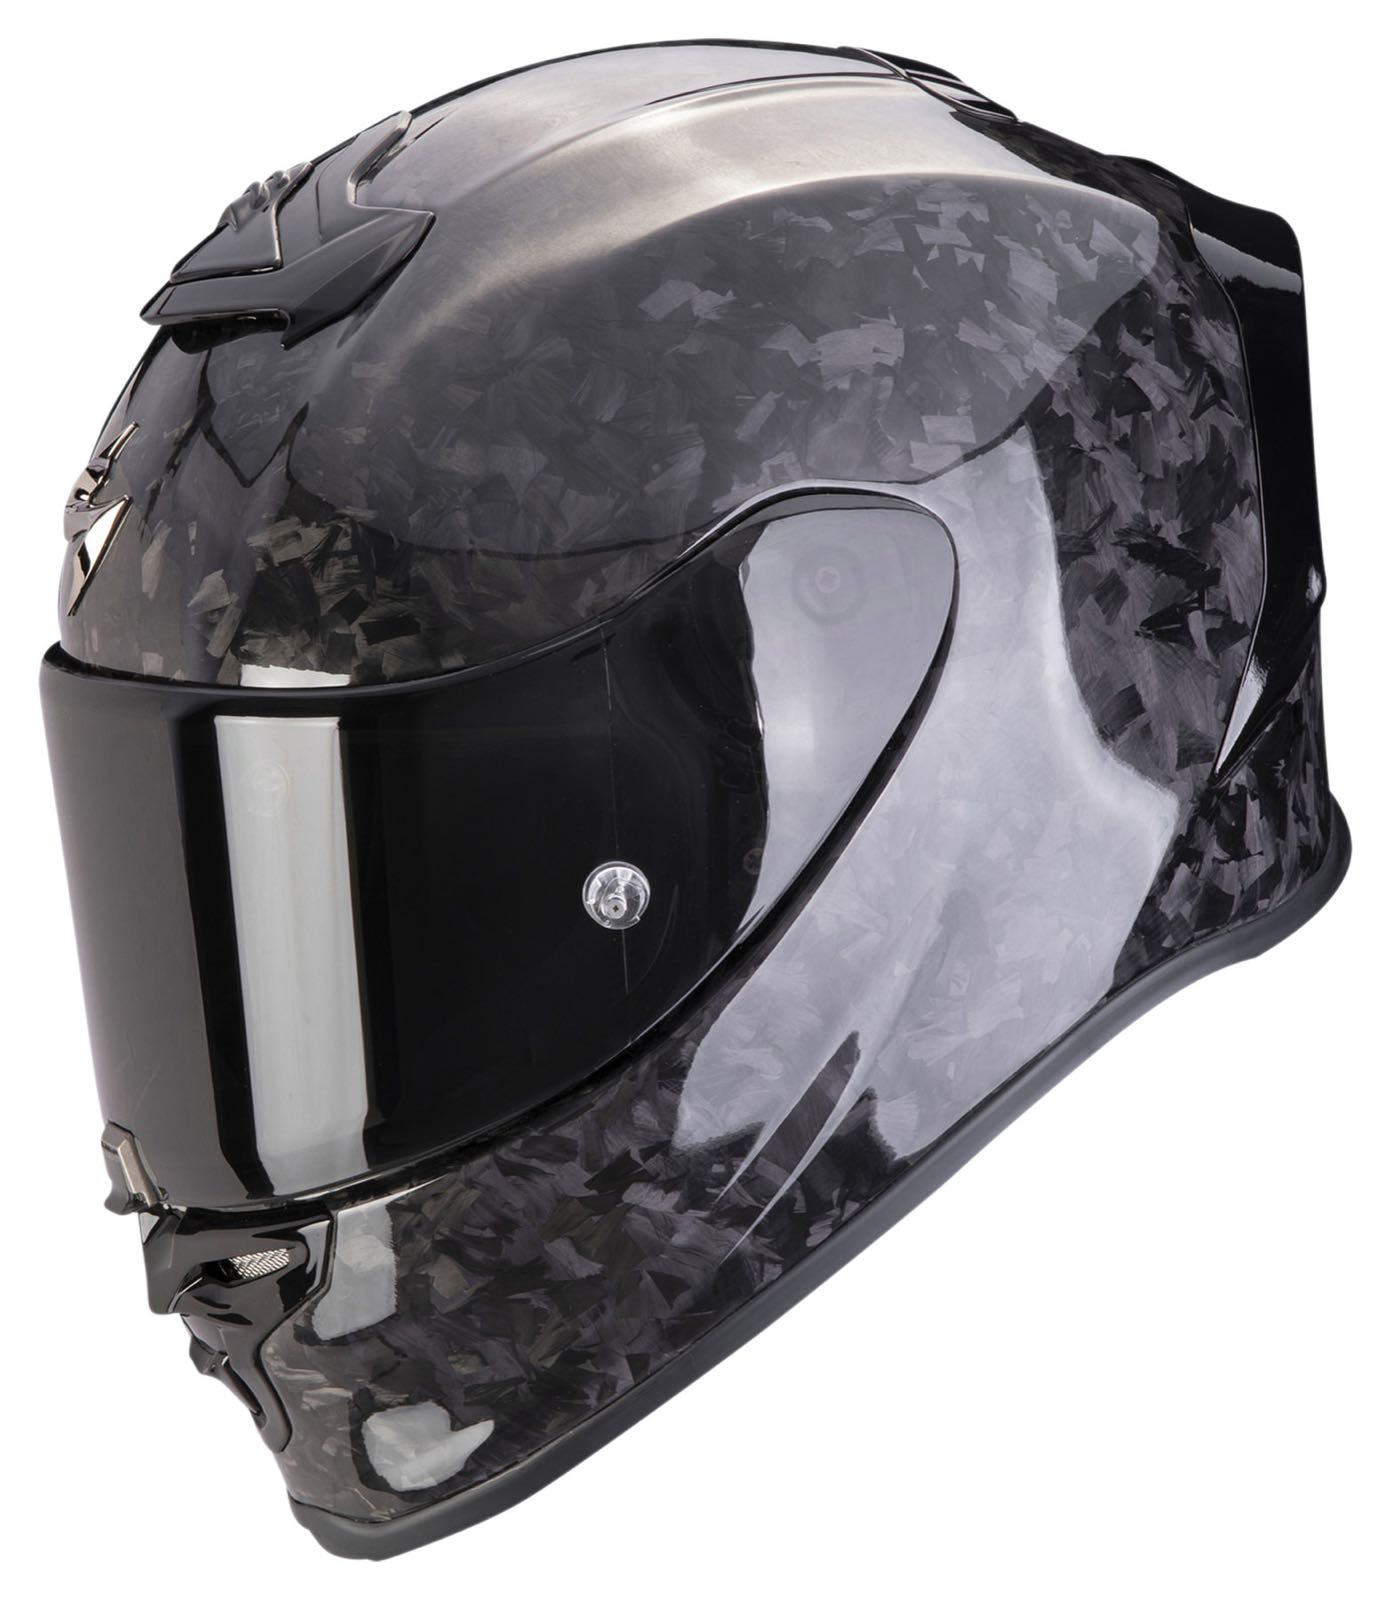 Scorpion Exo-R1 Evo Carbon Air Sport-Helm ab 495,-€